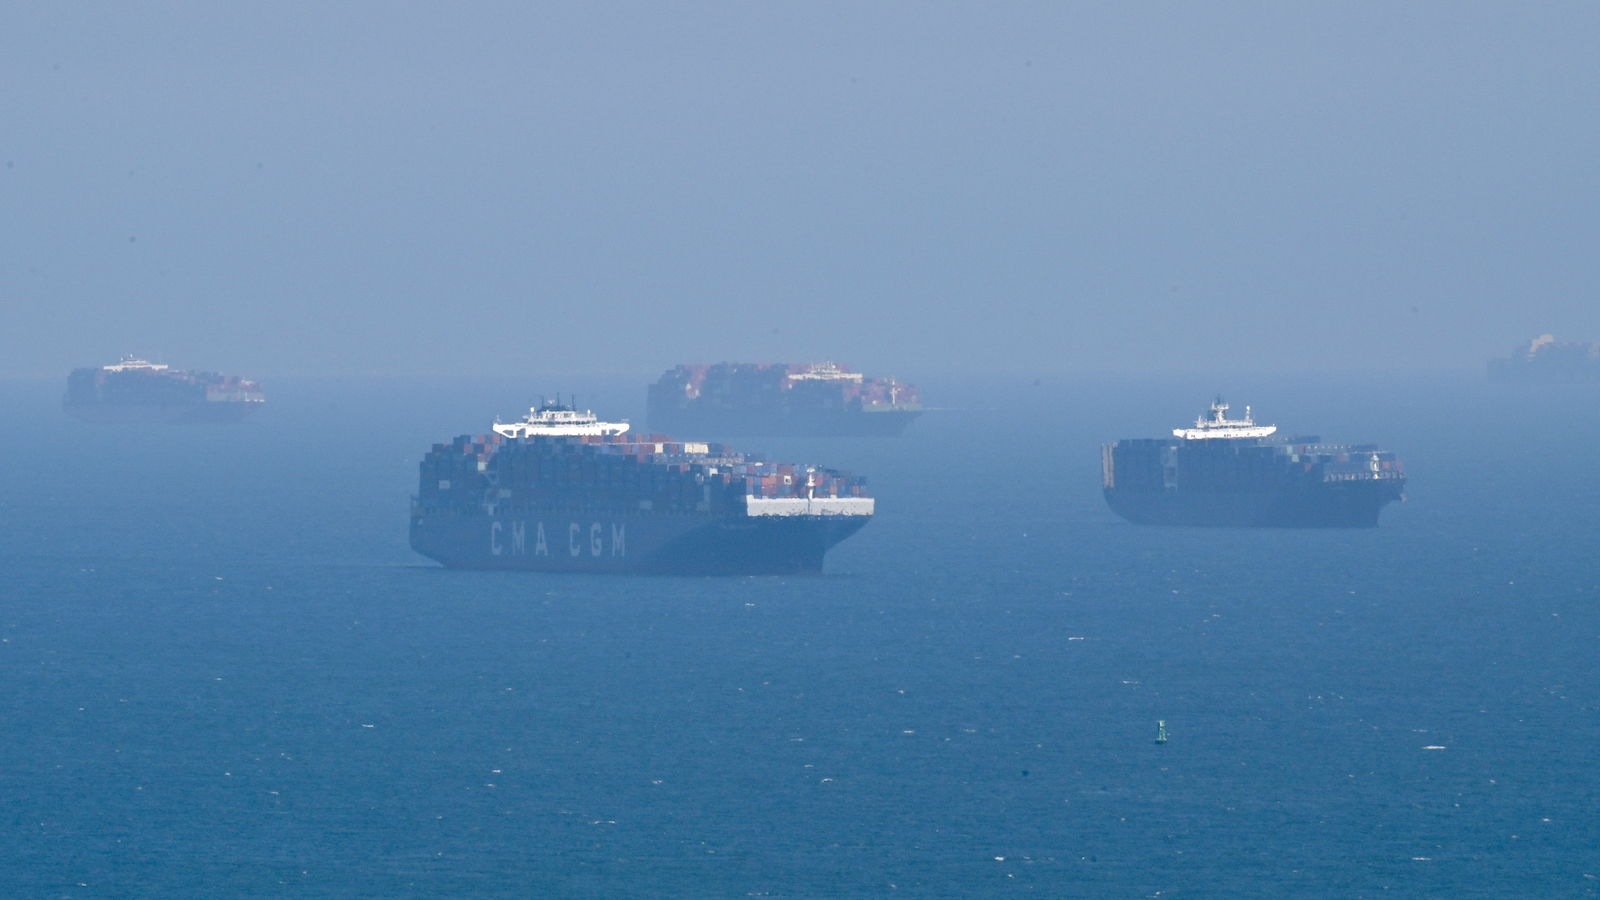 Cargo ships off Long Beach, California